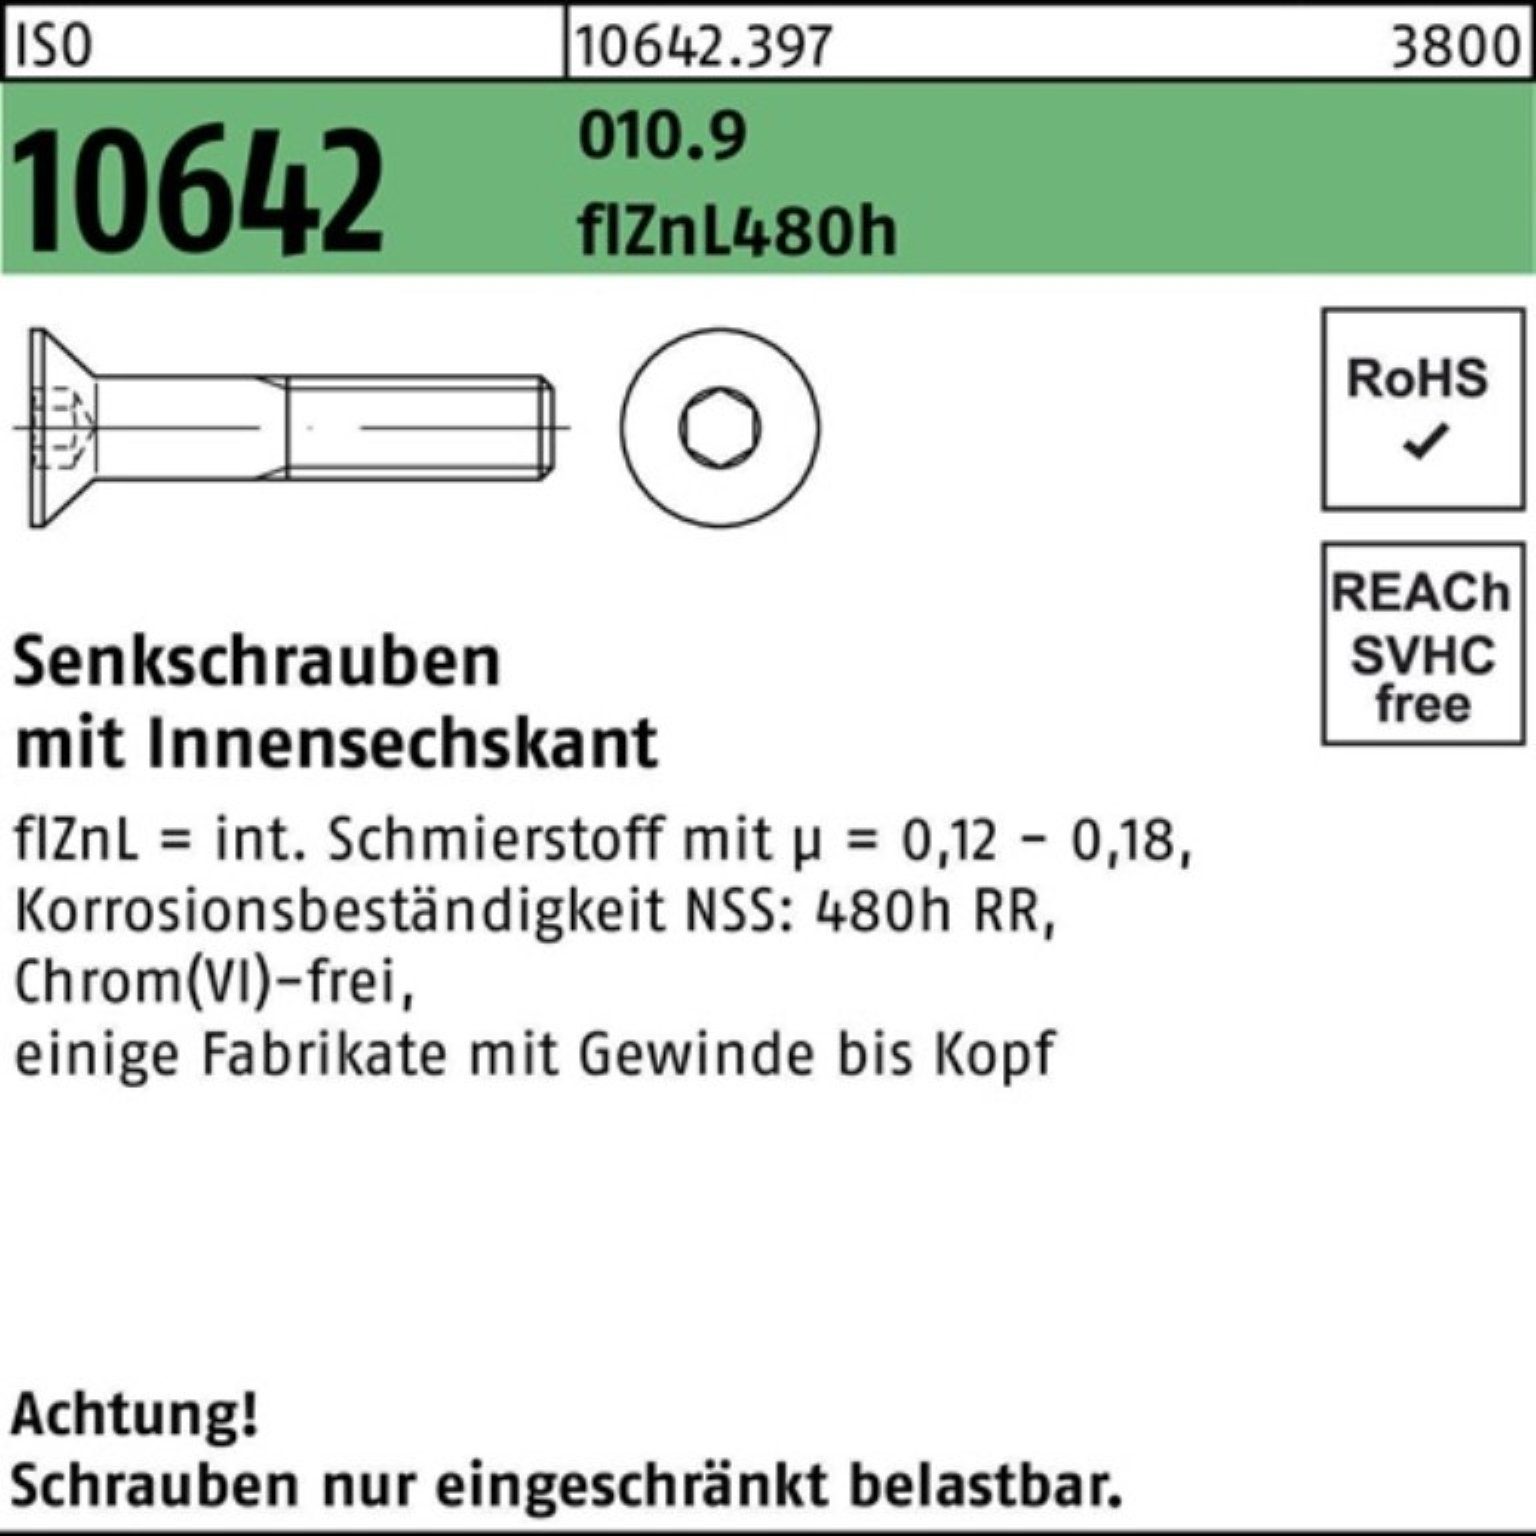 Reyher Senkschraube 100er Pack Senkschraube ISO 10642 Innen-6kt M12x70 010.9 flZnL 480h zi